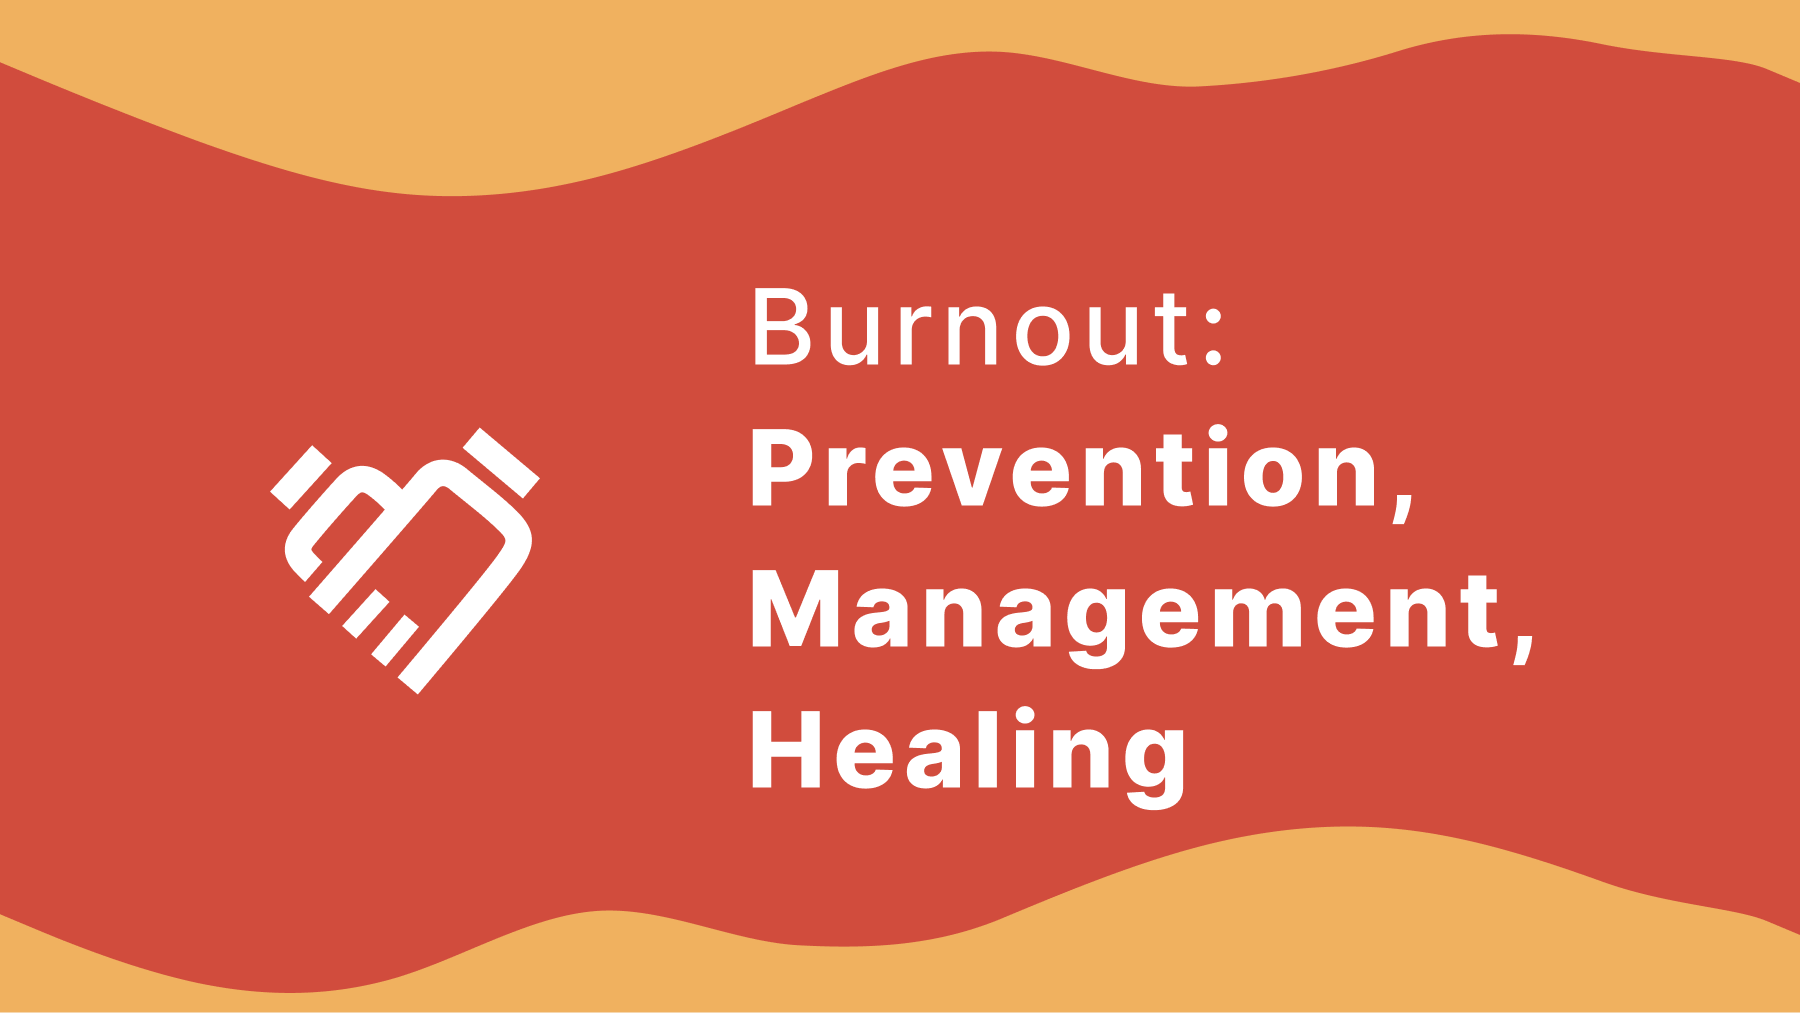 Burnout: Prevention, Management, Healing